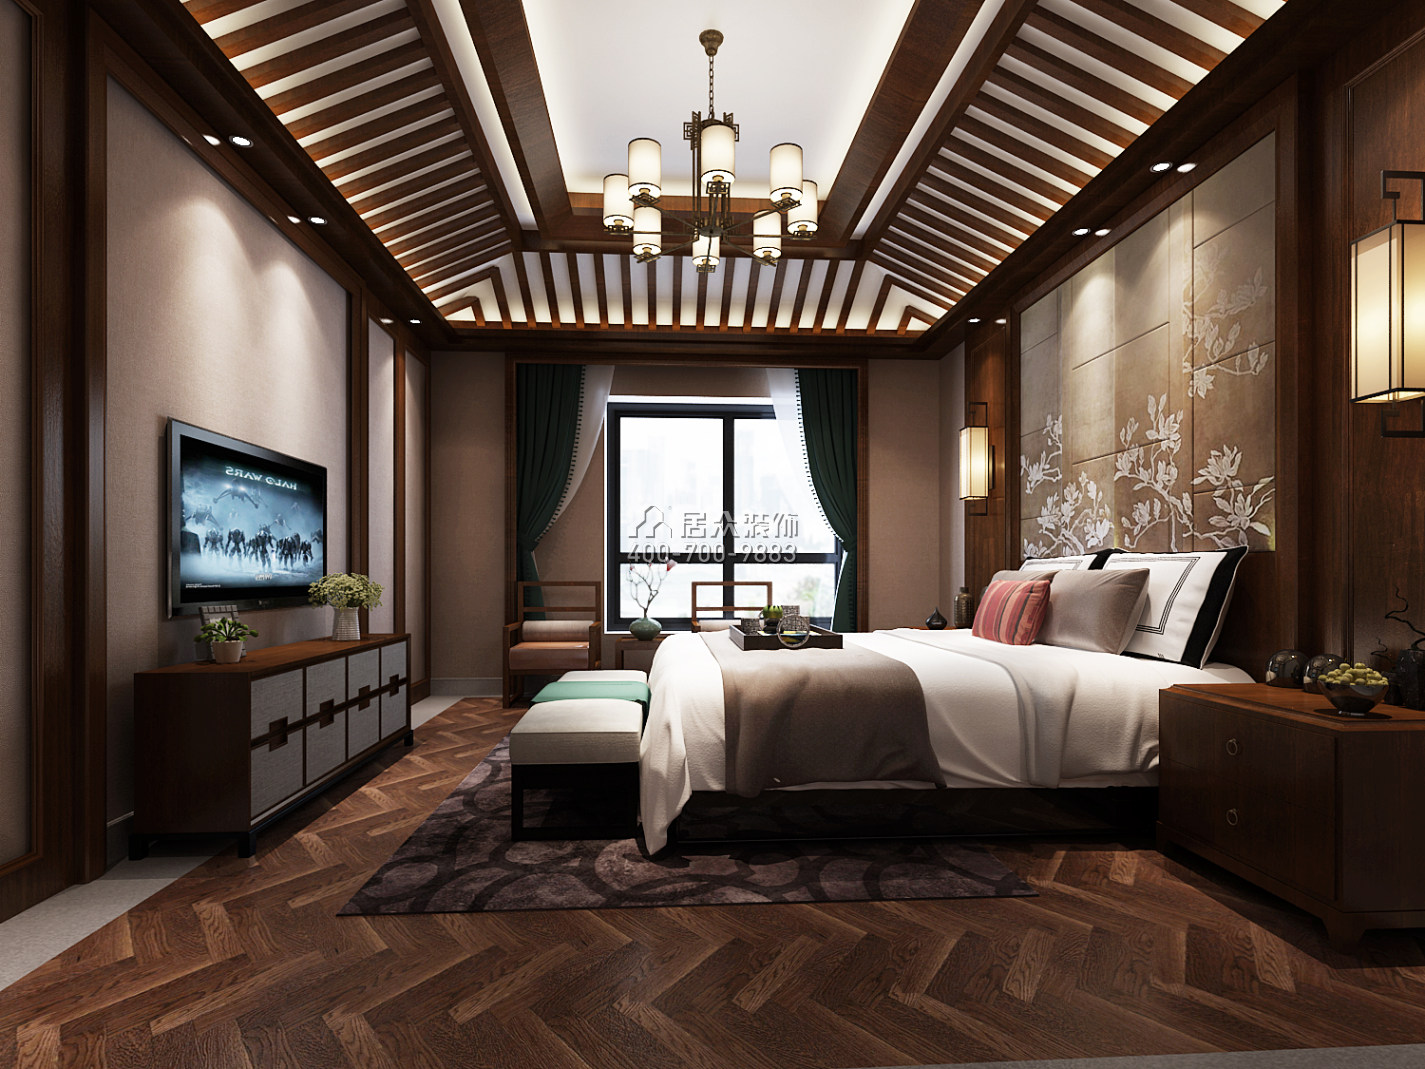 天利天鵝灣450平方米中式風格別墅戶型臥室裝修效果圖